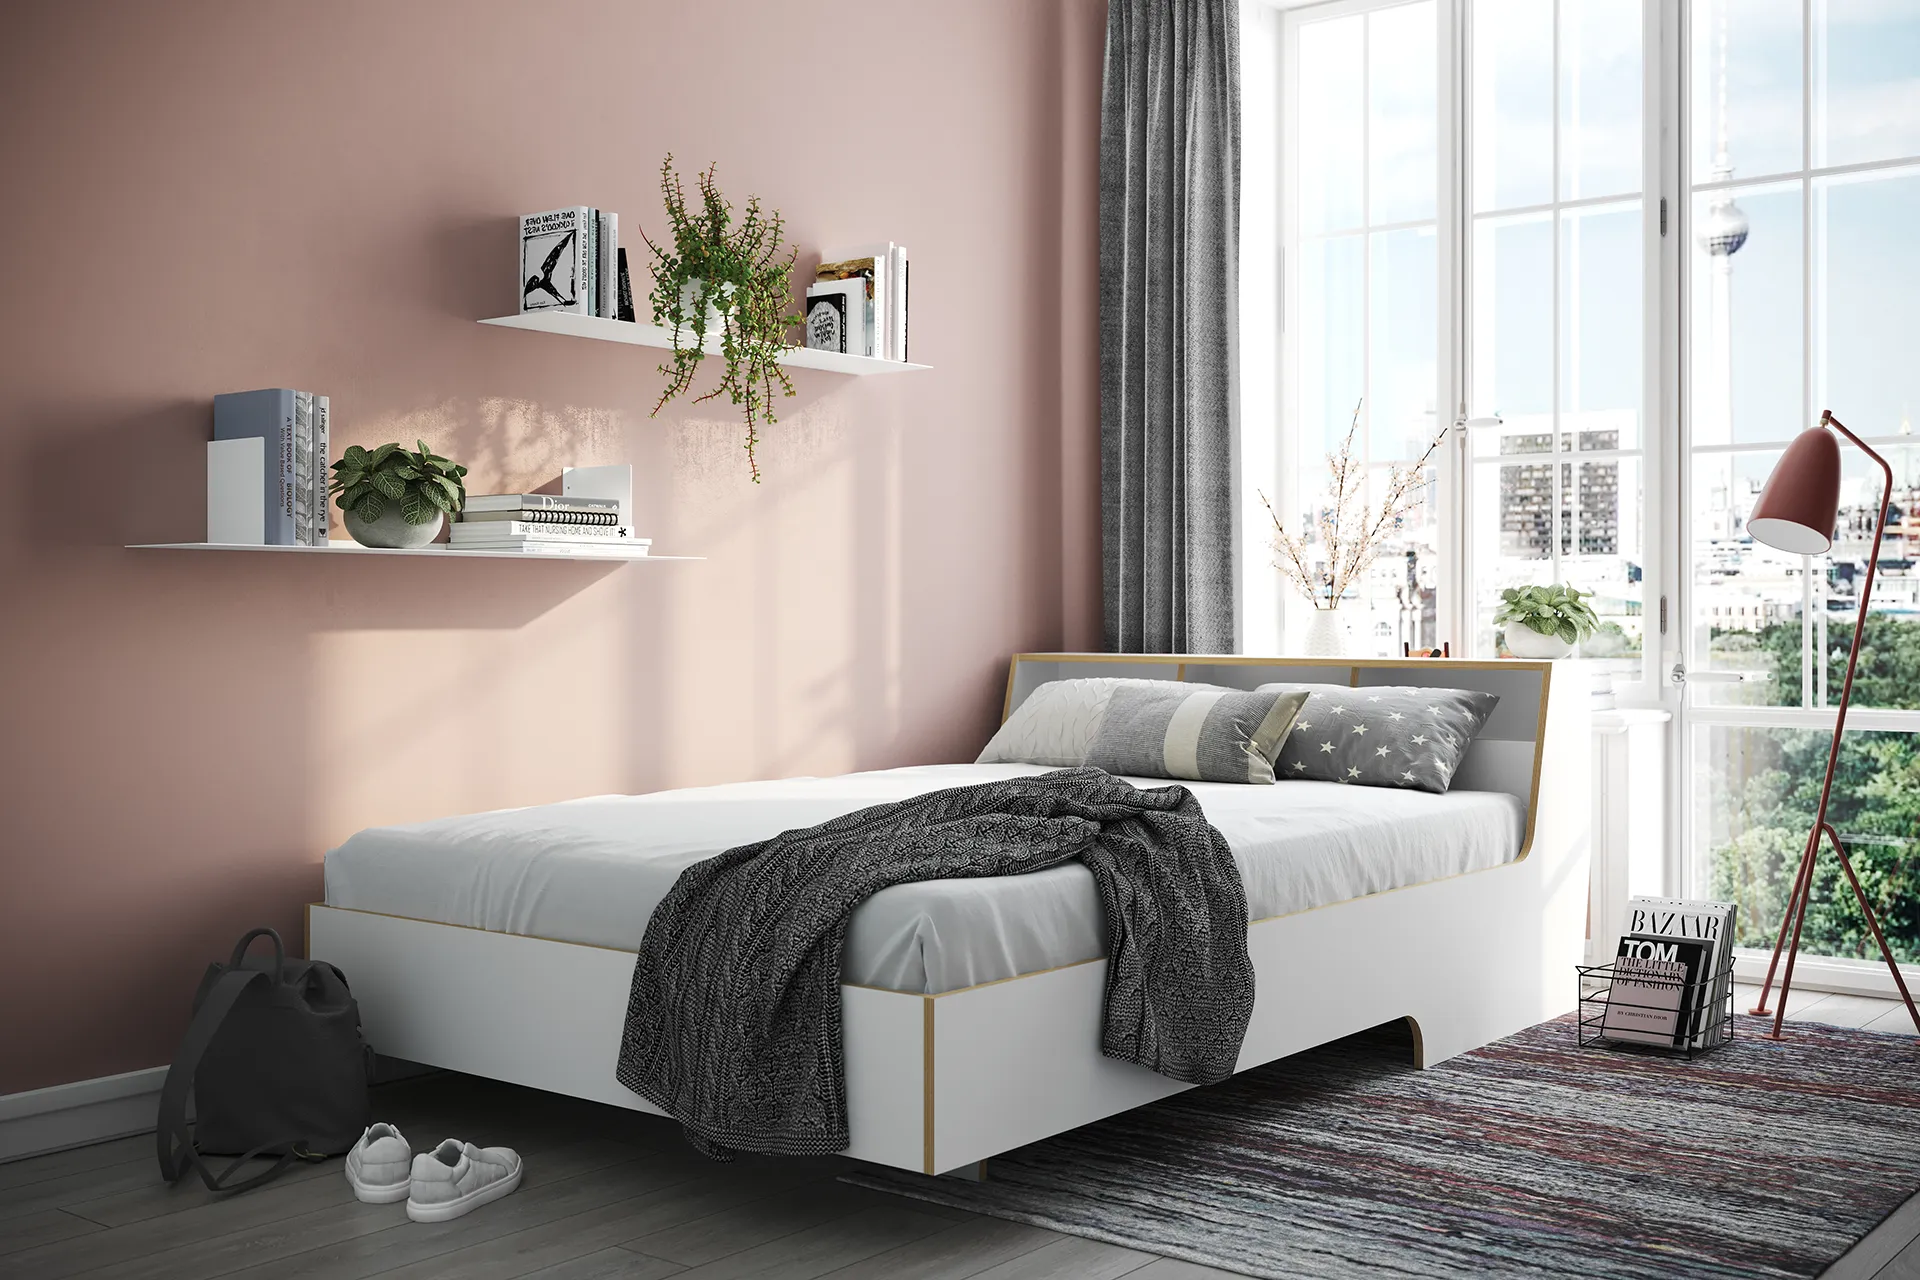 Das SLOPE Doppelbett 180x200 in weiß in einem lachsfarbenen Schlafzimmer